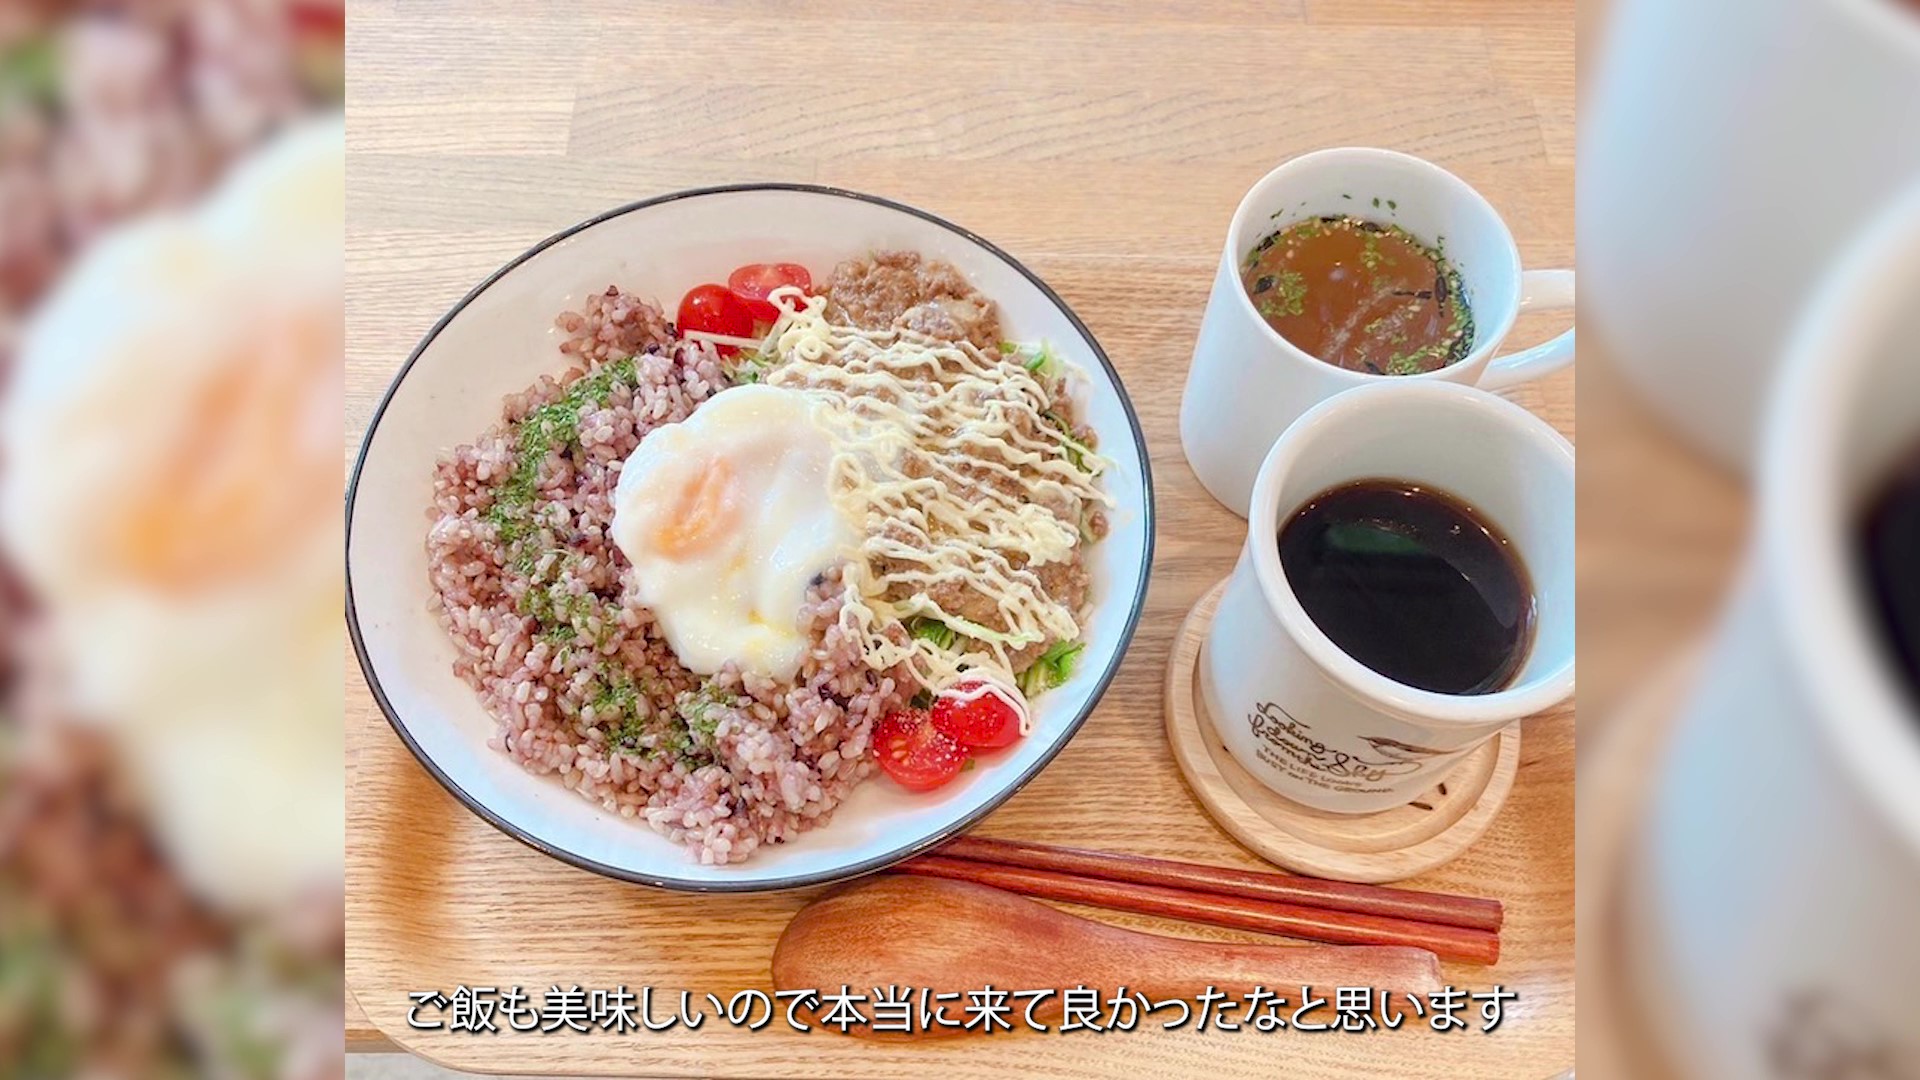 佐賀市内にはおしゃれなカフェが多く、ご飯もおいしい